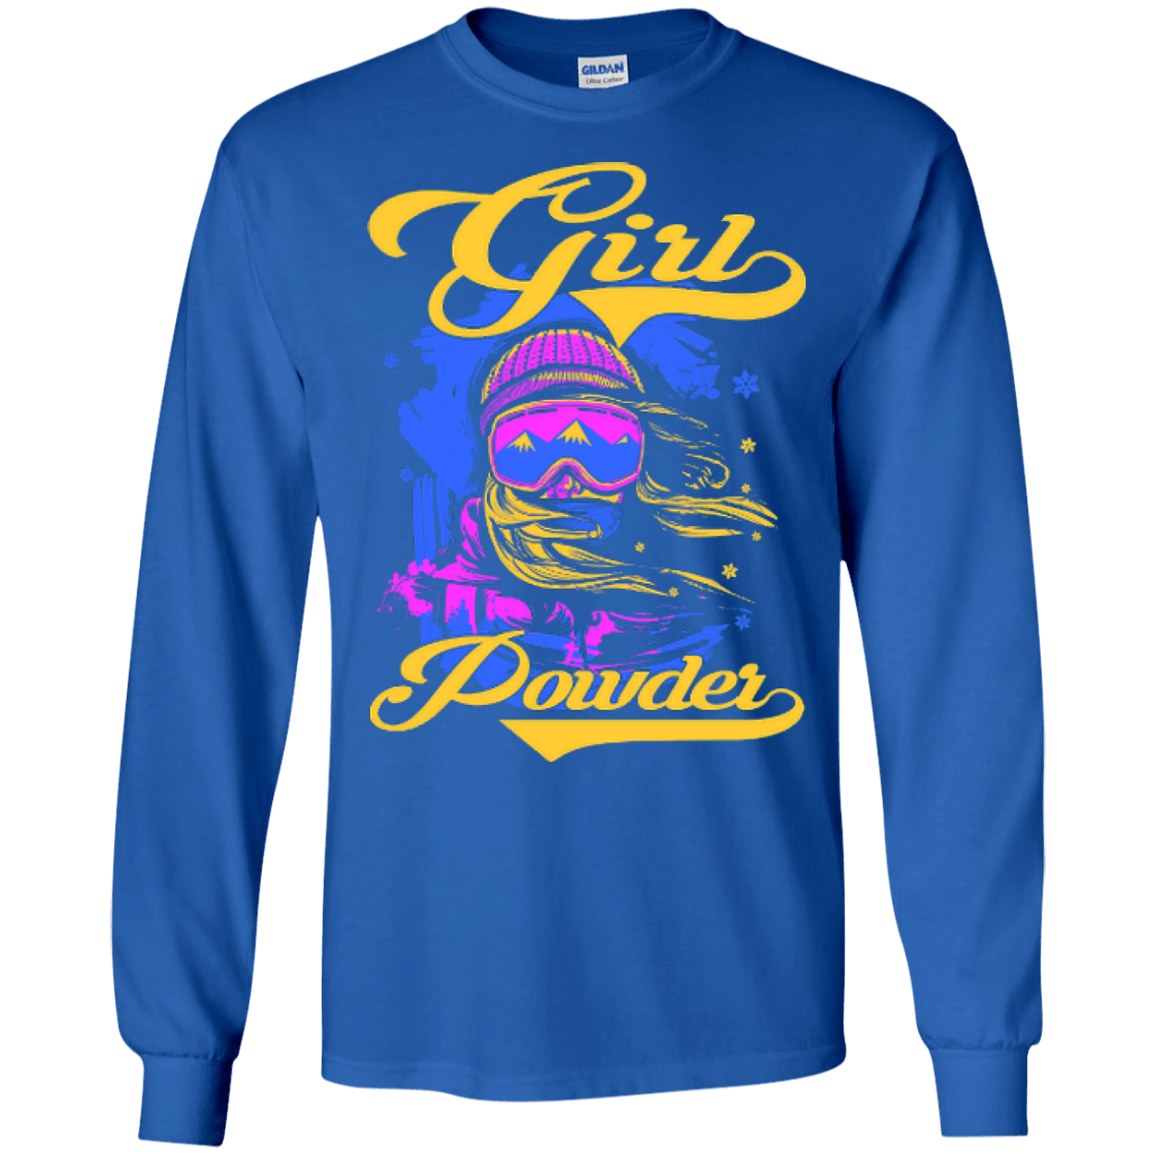 Girl Powder Long Sleeves - Powderaddicts